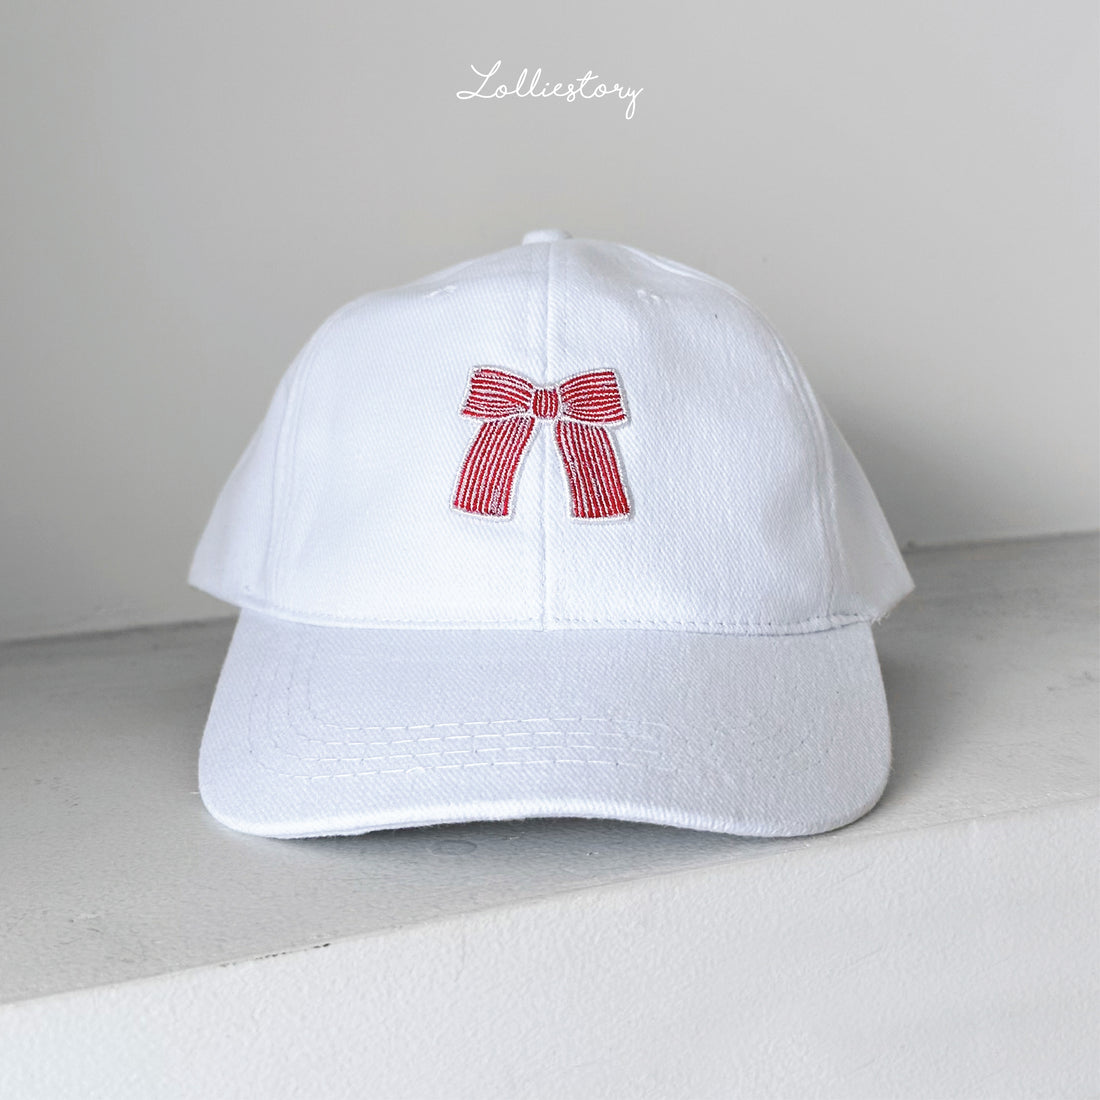 Lolliestory Merchandise Cap